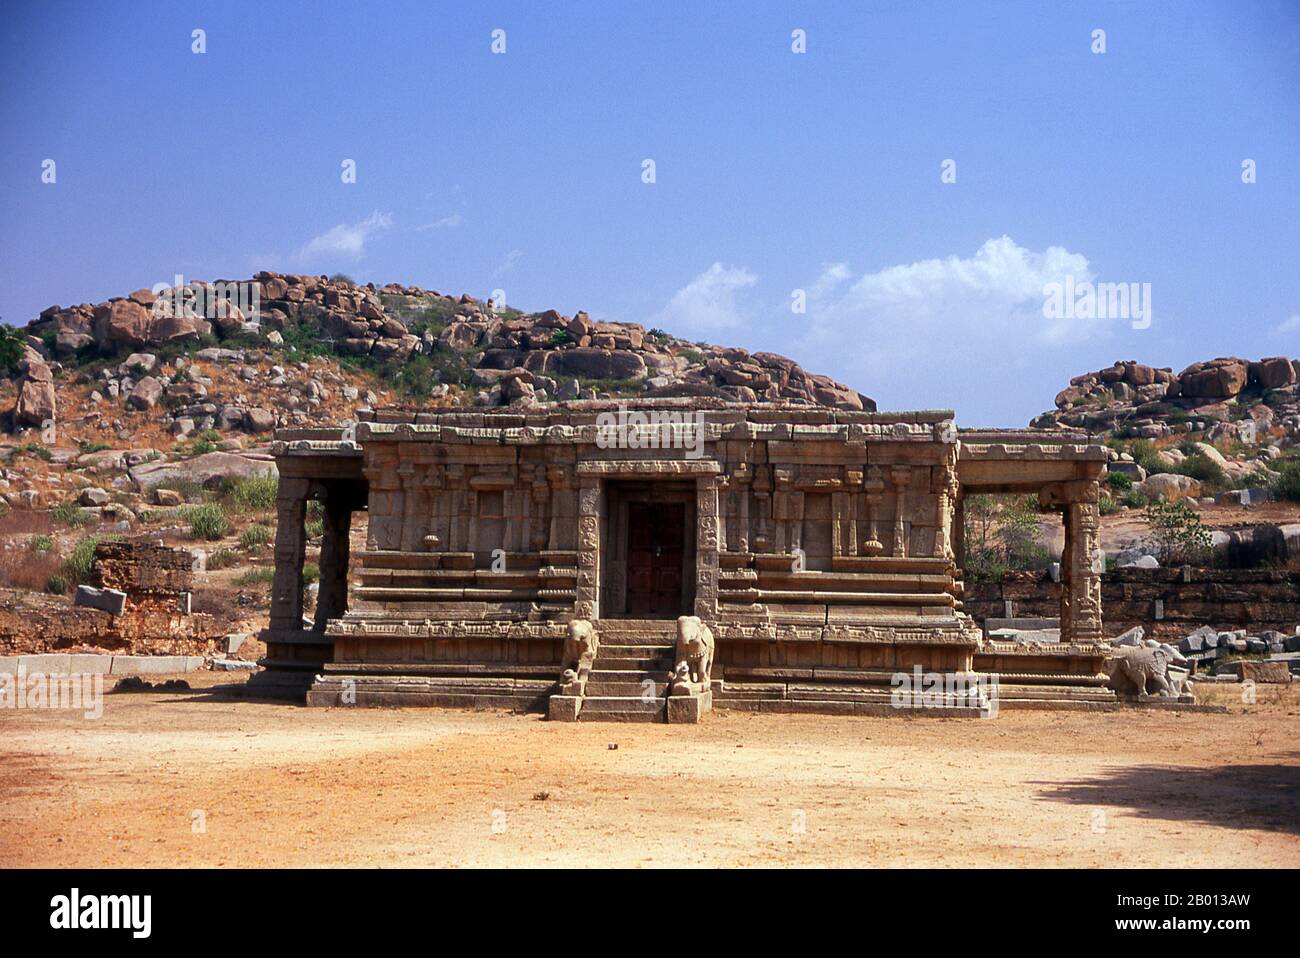 India: Padiglione vicino al Tempio di Vitthala, Hampi, Karnataka Stato. Il Tempio di Vittala, costruito agli inizi del XVI secolo, è dedicato al dio indù Vithoba (conosciuto anche come Vitthala e Panduranga), un incarnazione di Vishnu o del suo avatar Krishna. Hampi è un villaggio del Karnataka, nello stato del Nord. Si trova all'interno delle rovine di Vijayanagara, l'ex capitale dell'Impero Vijayanagara. Antecedente la città di Vijayanagara, continua ad essere un importante centro religioso, che ospita il Tempio di Virupaksha, così come molti altri monumenti appartenenti alla città vecchia. Foto Stock